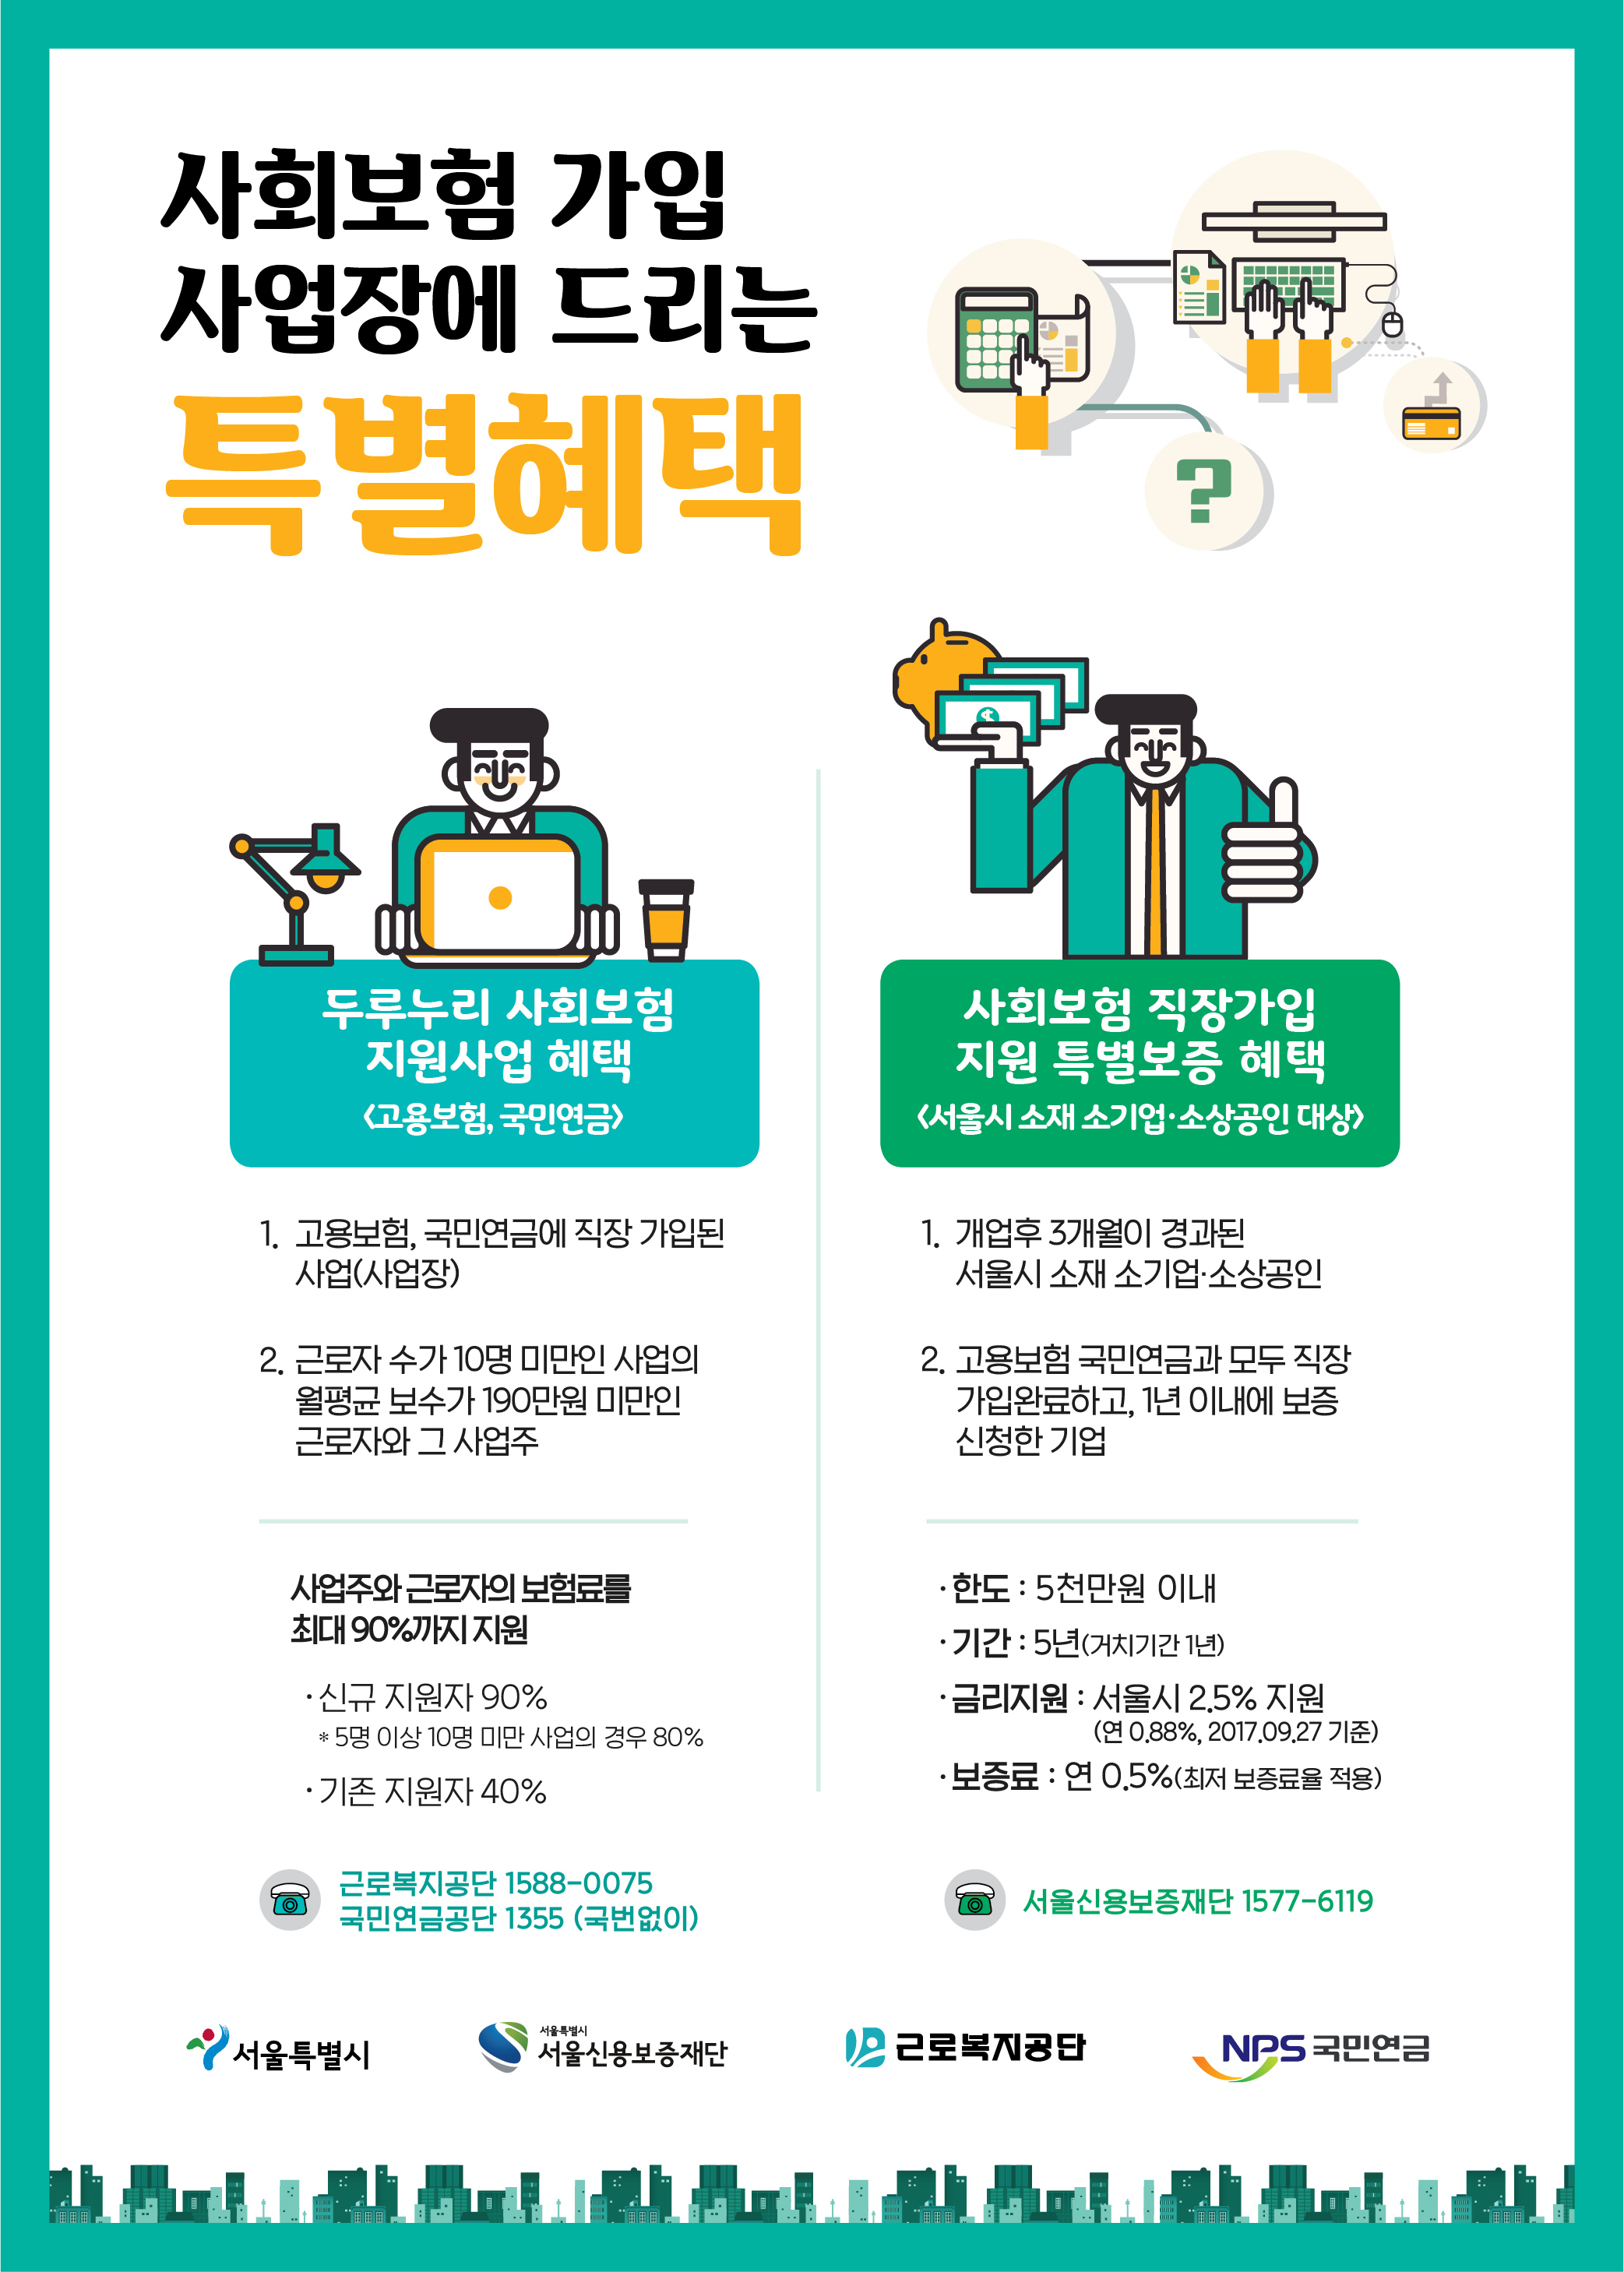 서울시소재 소기업, 소상공인에게 드리는 특별혜택